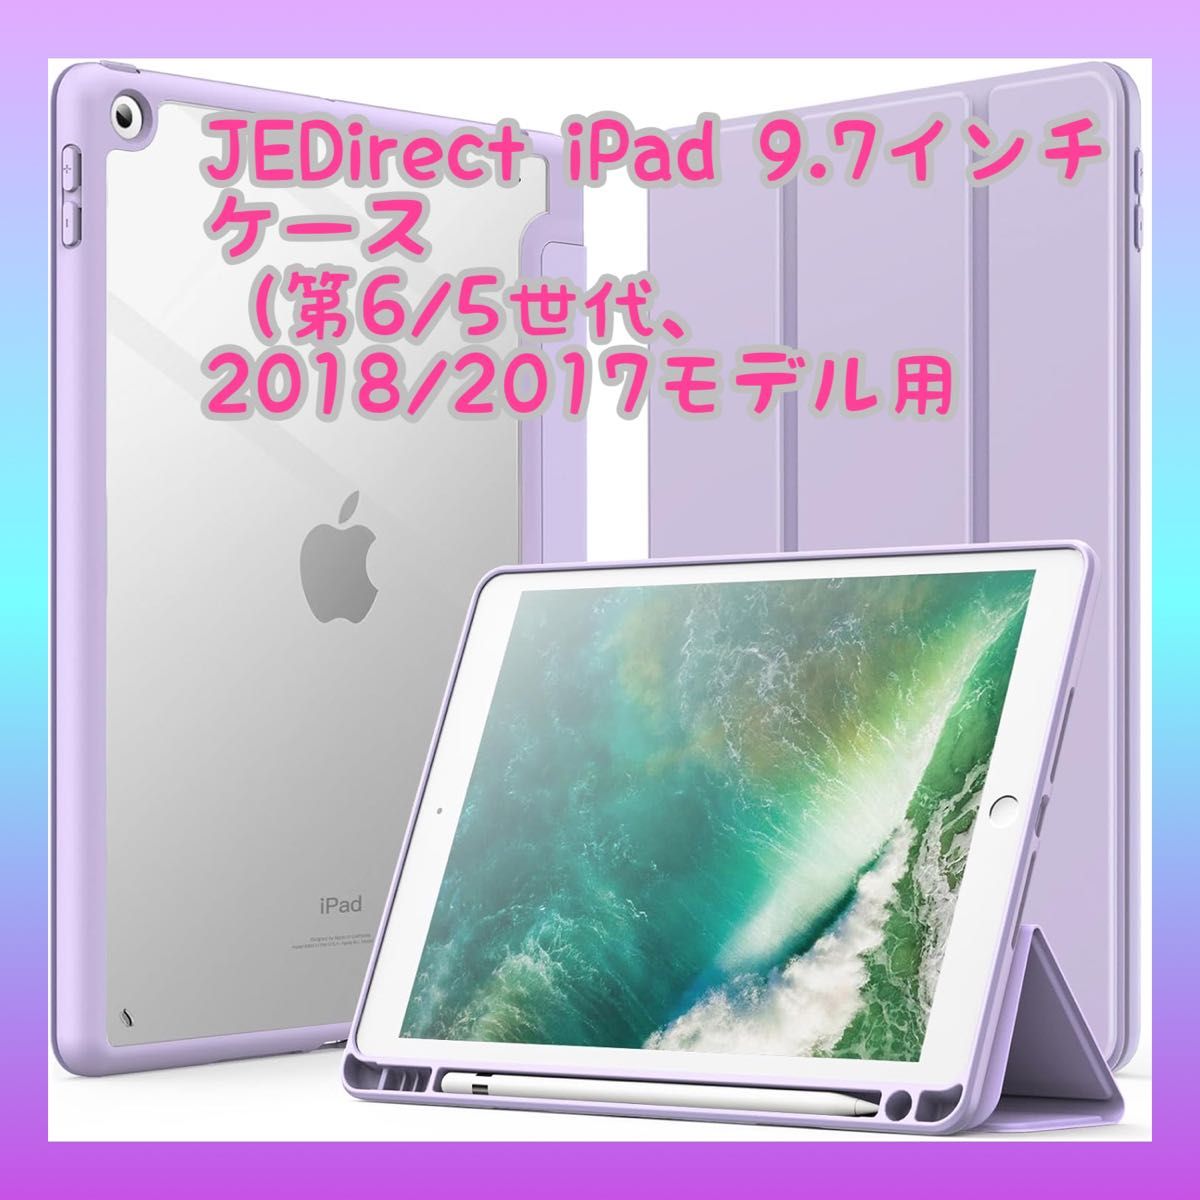 JEDirect iPad 9.7インチ ケース ライトパープル - iPadアクセサリー